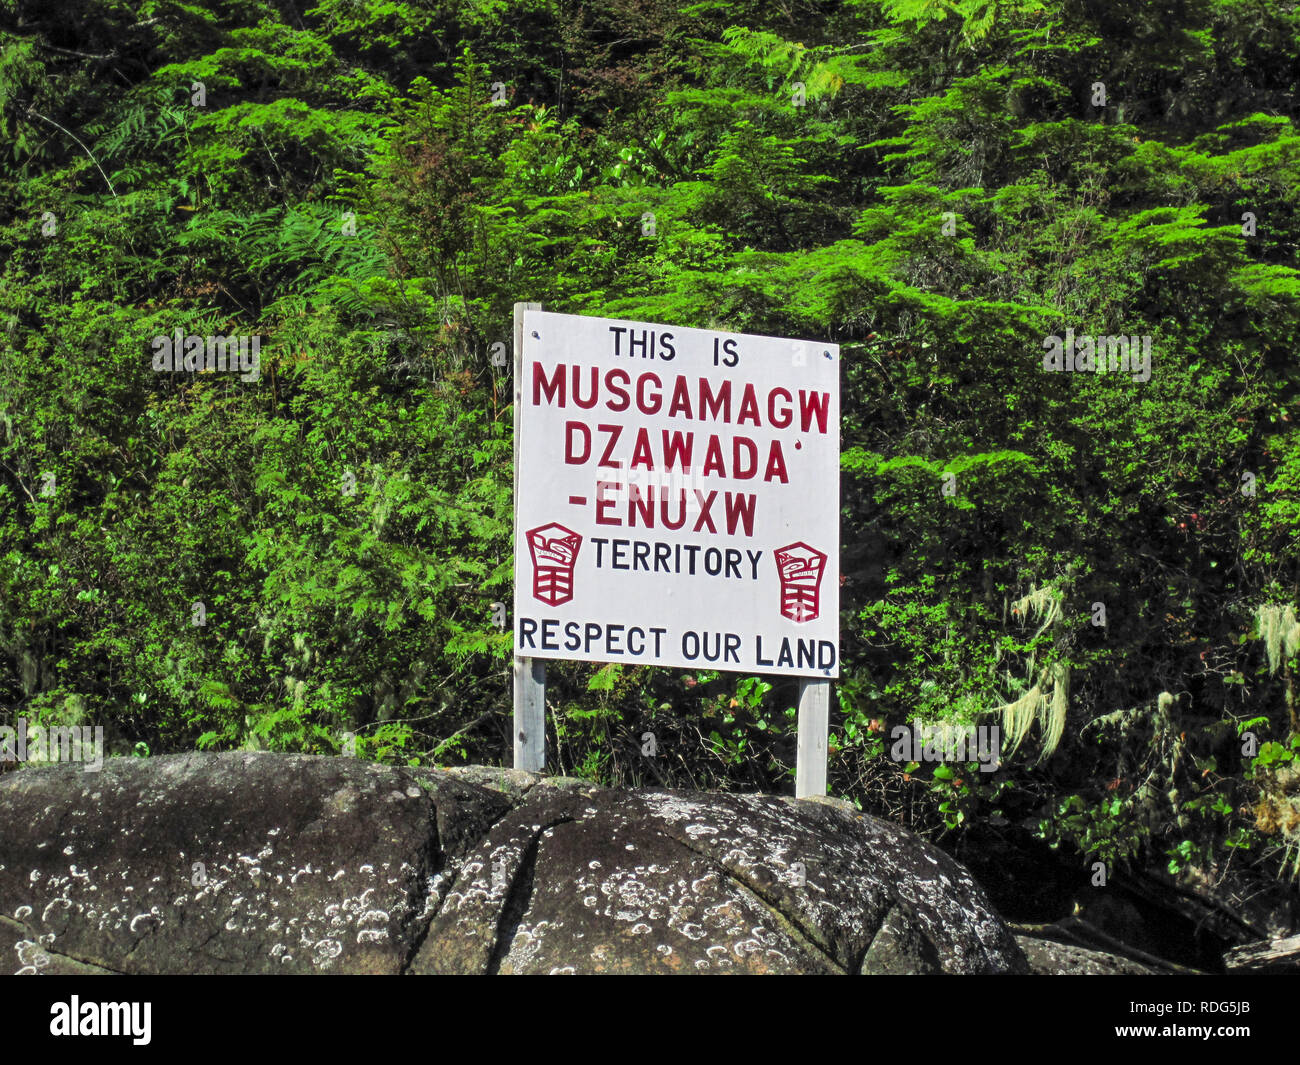 Un signe sur un rivage rocheux demande aux gens de respecter la terre, une partie du territoire de la Musgamagw Dzawada'enuxw First Nation (Colombie-Britannique). Banque D'Images